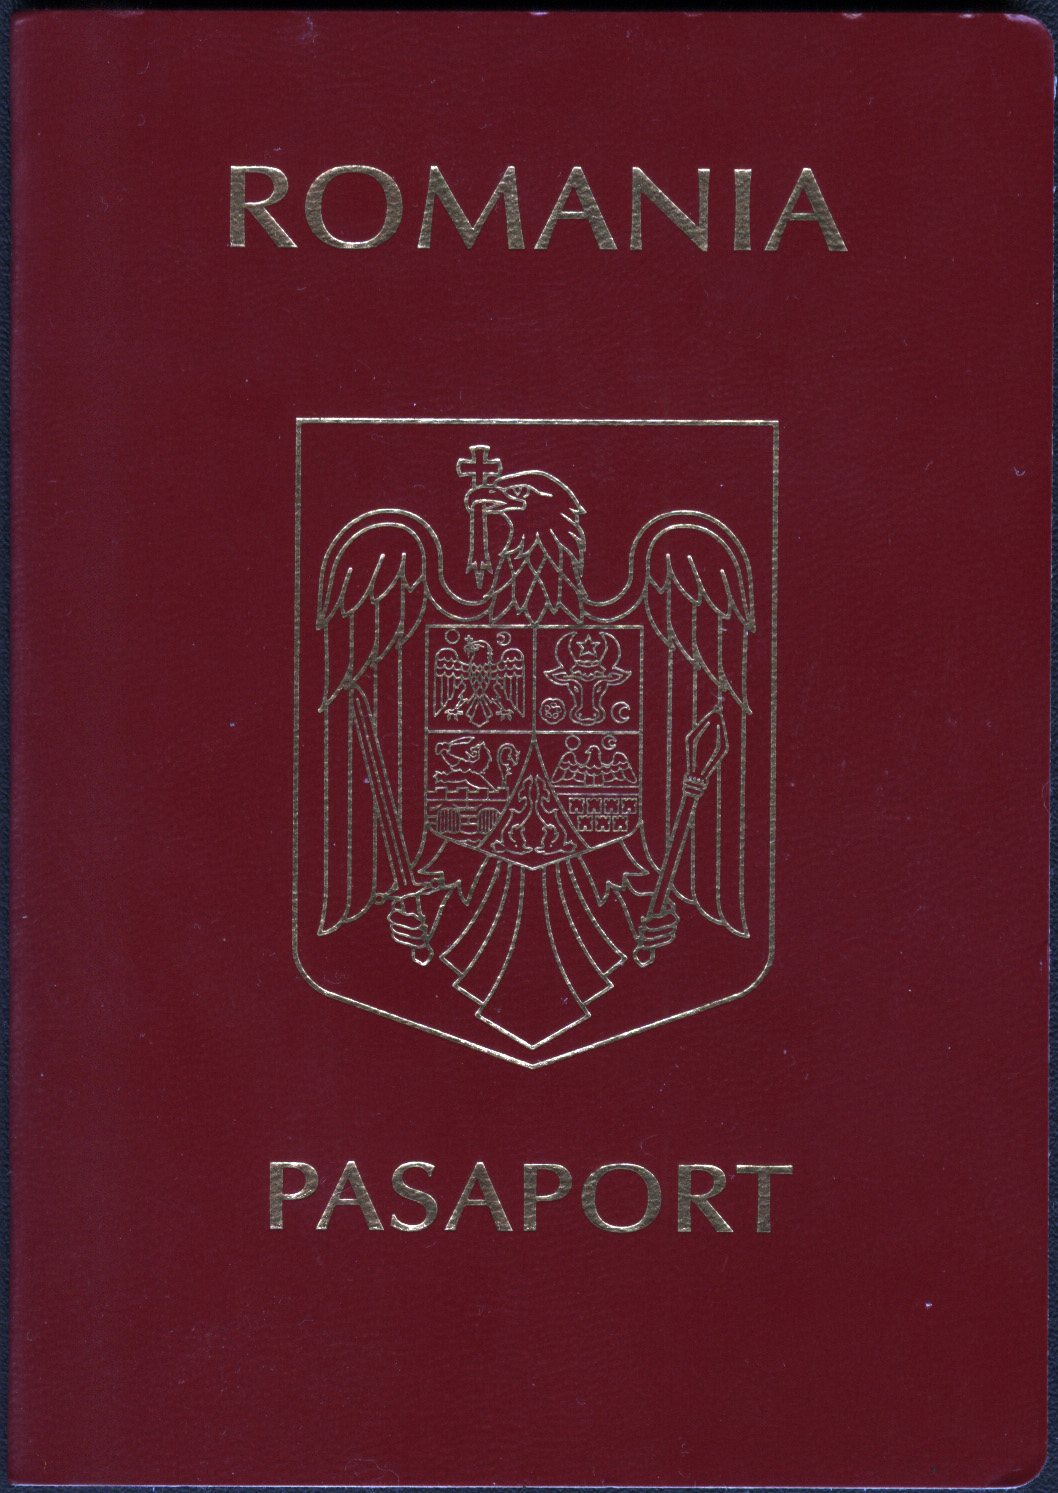 Cu pașaportul la domiciliu, s-a simplificat procedura de primire a documentului